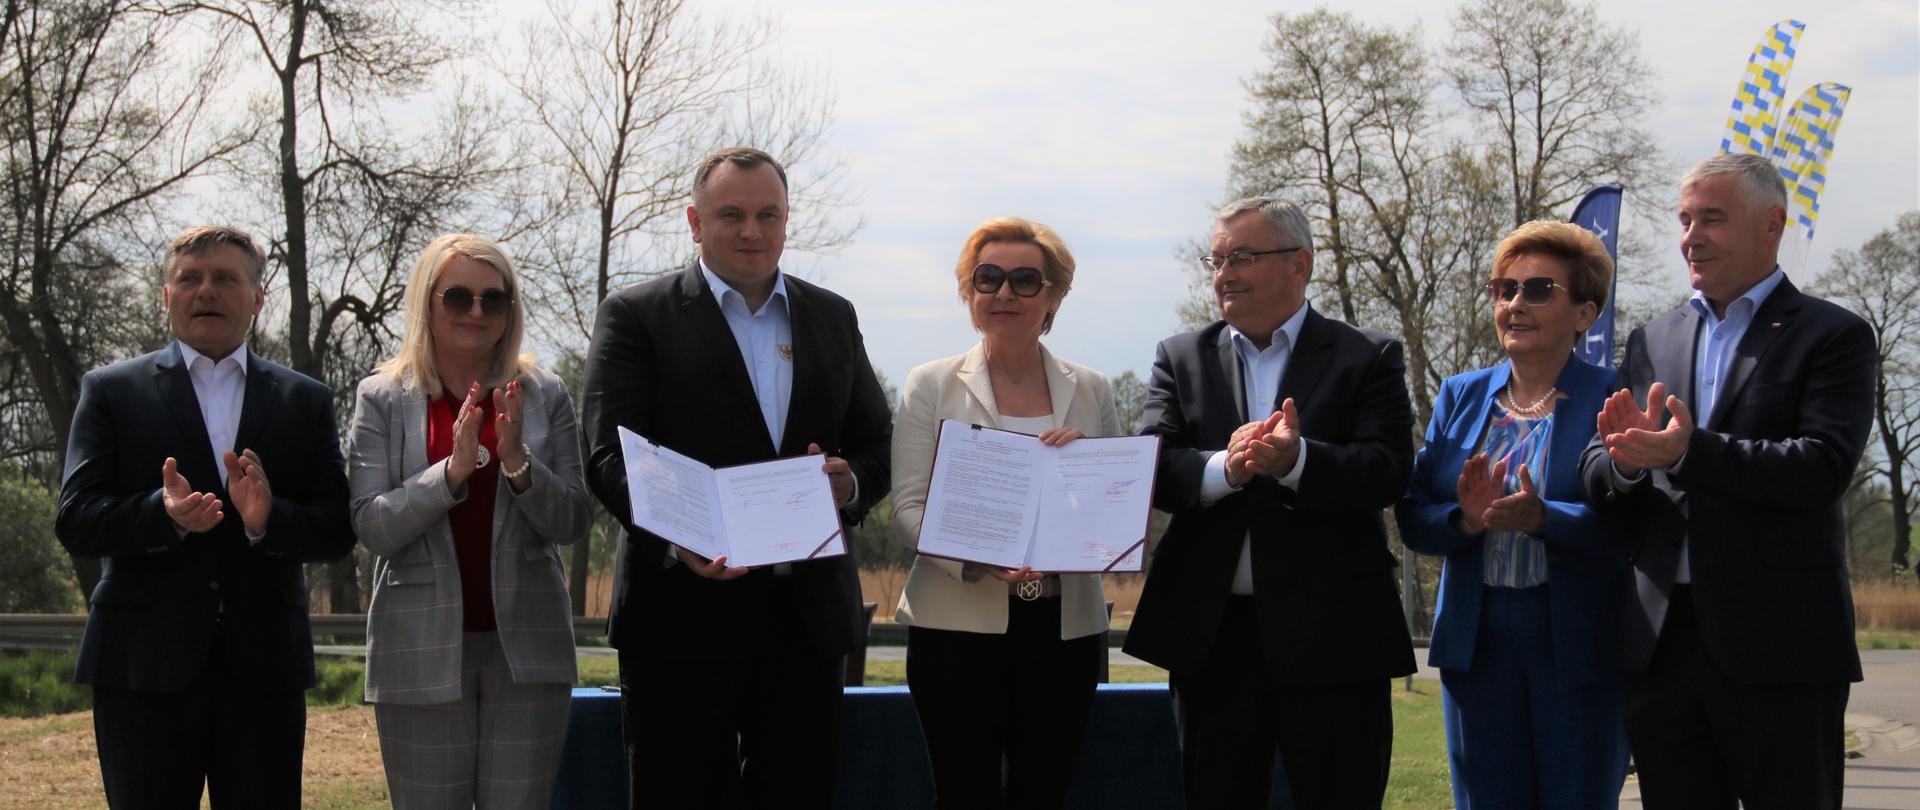 Minister infrastruktury Andrzej Adamczyk w towarzystwie samorządowców oraz posłów z regionu po podpisaniu umowy dofinansowania